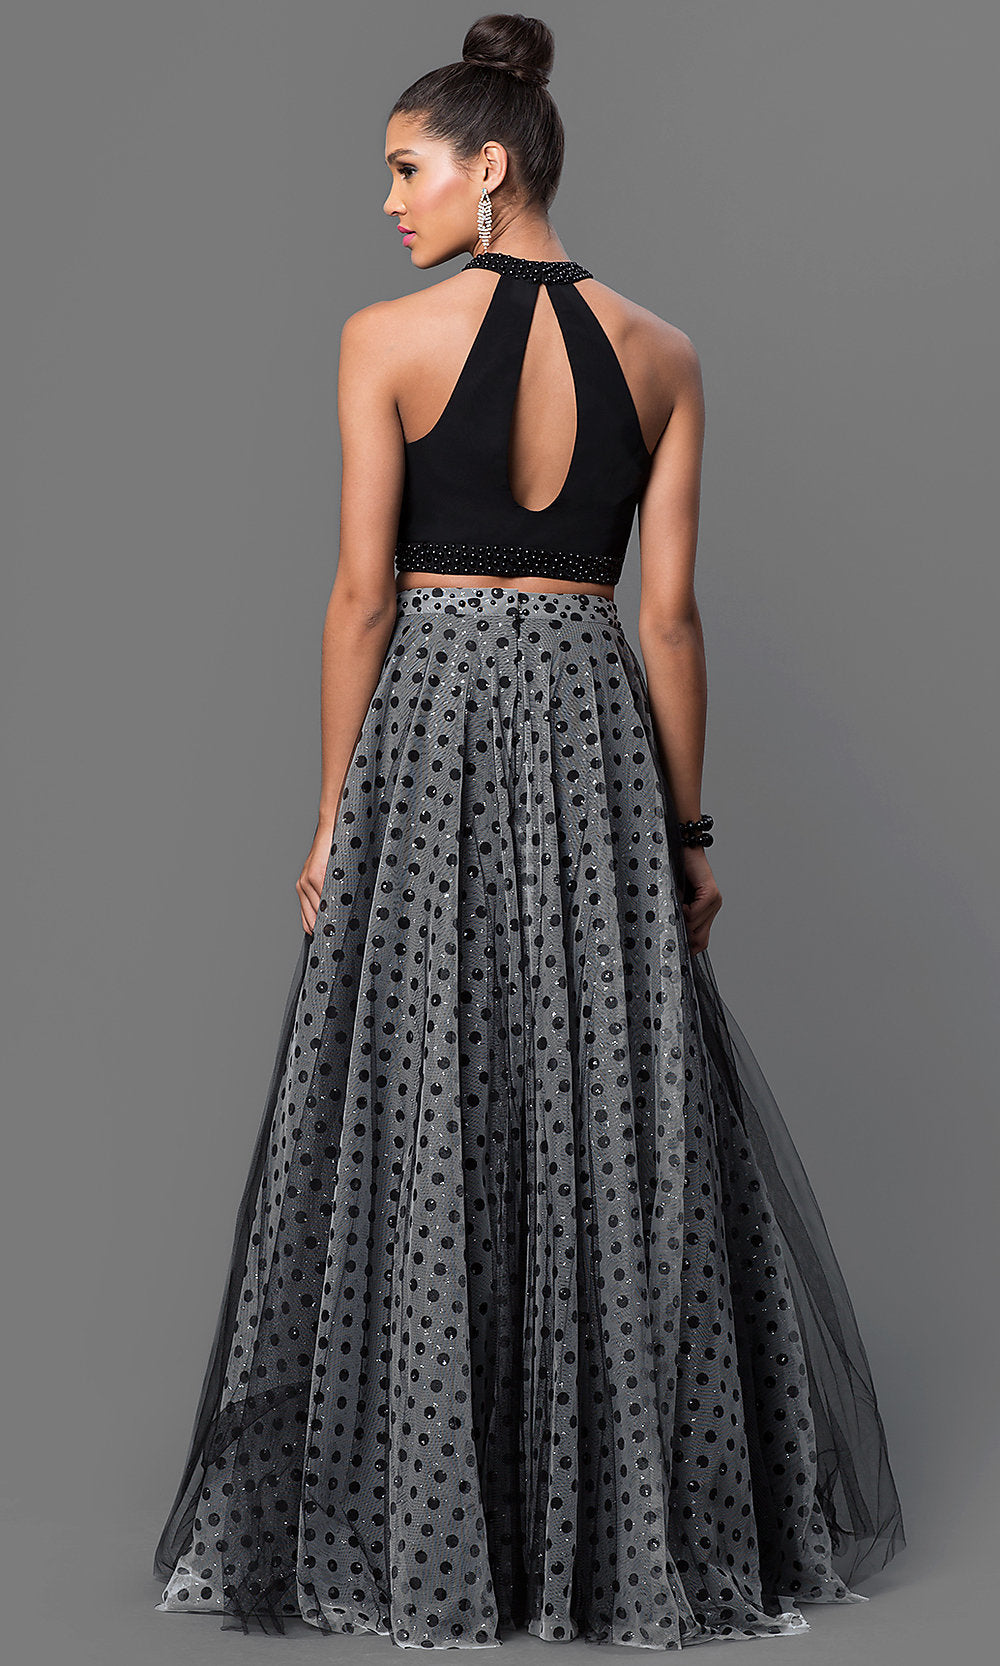  Two-Piece Black Polka Dot Long Formal Dress